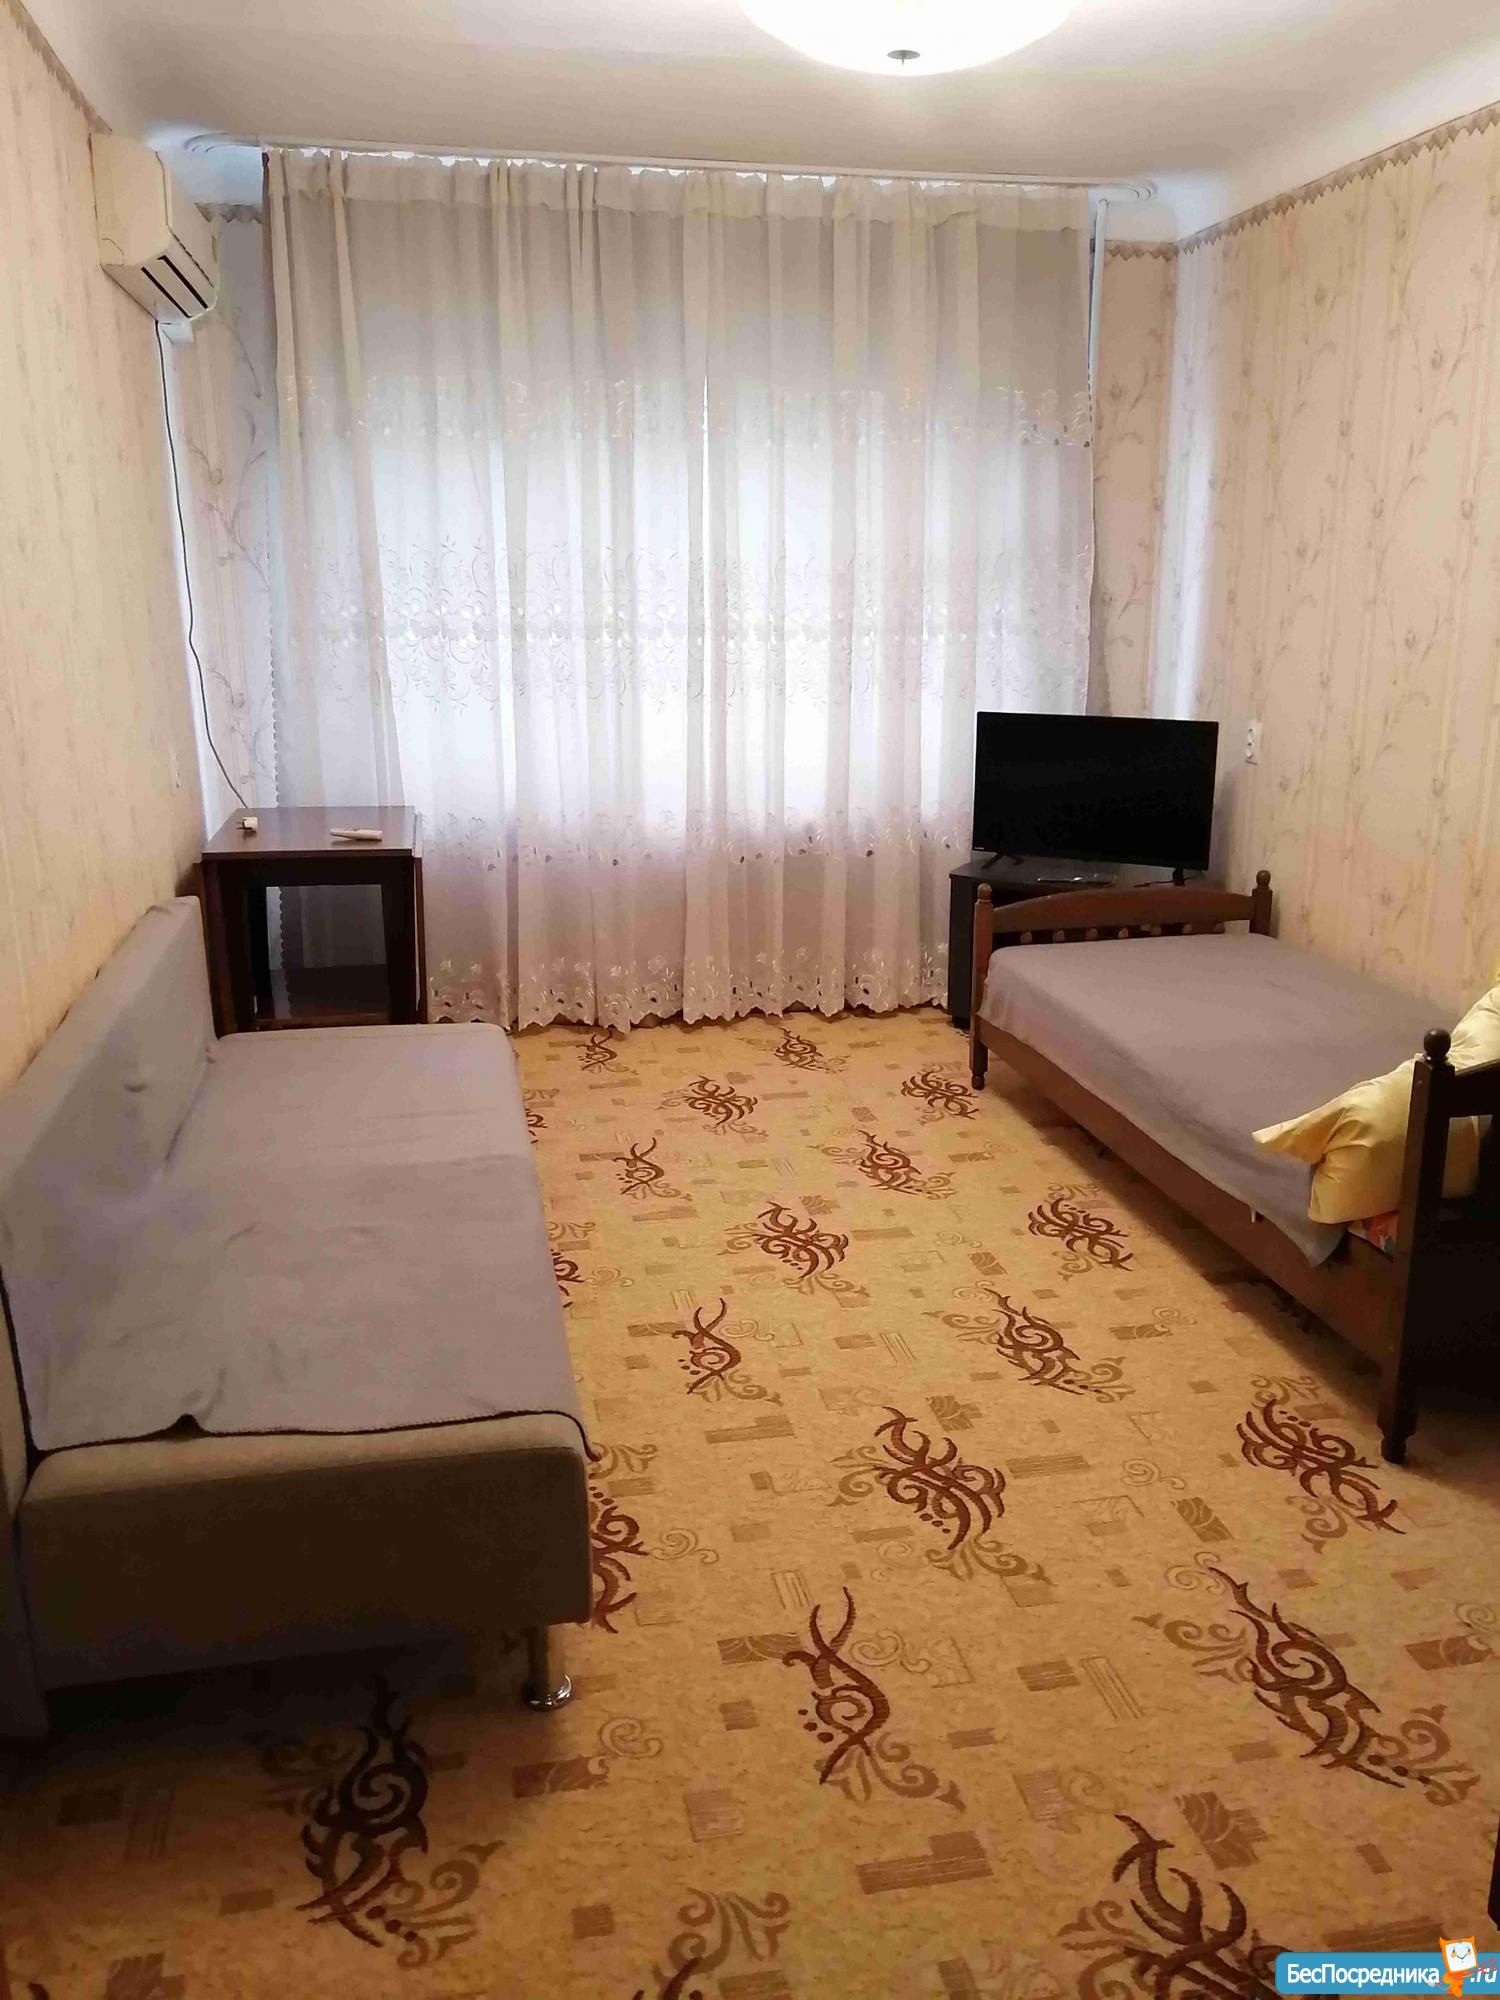 Съемка двухкомнатной квартиры в Краснодаре